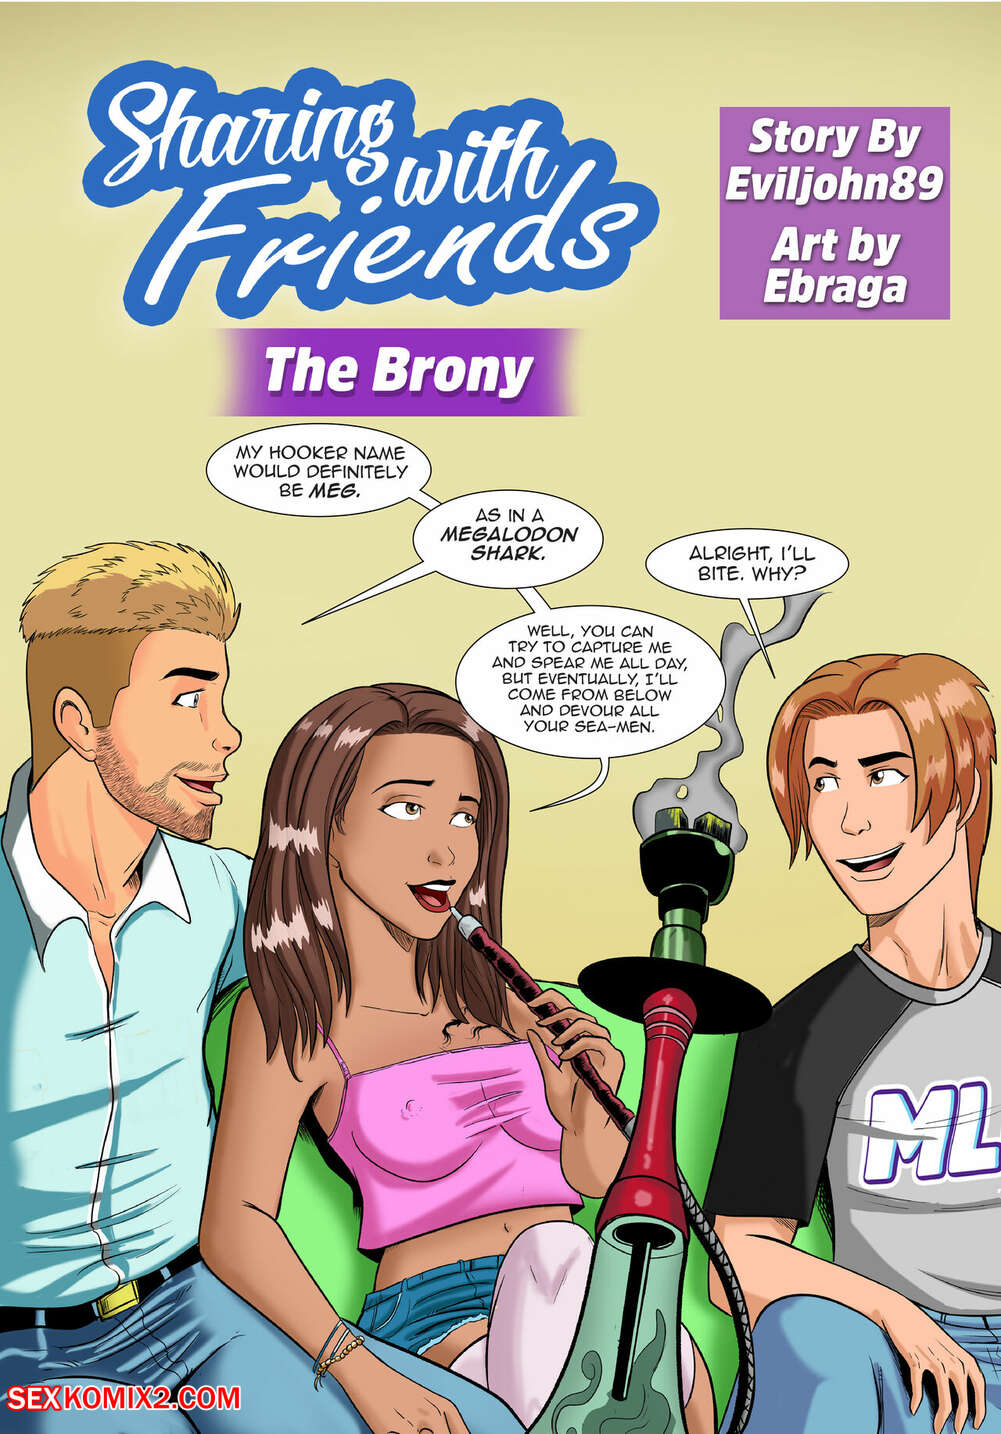 89 C Om - âœ…ï¸ Porn comic Sharing with Friends. The Brony. Eviljohn89, Ebraga. Sex  comic busty brunette is | Porn comics in English for adults only |  sexkomix2.com